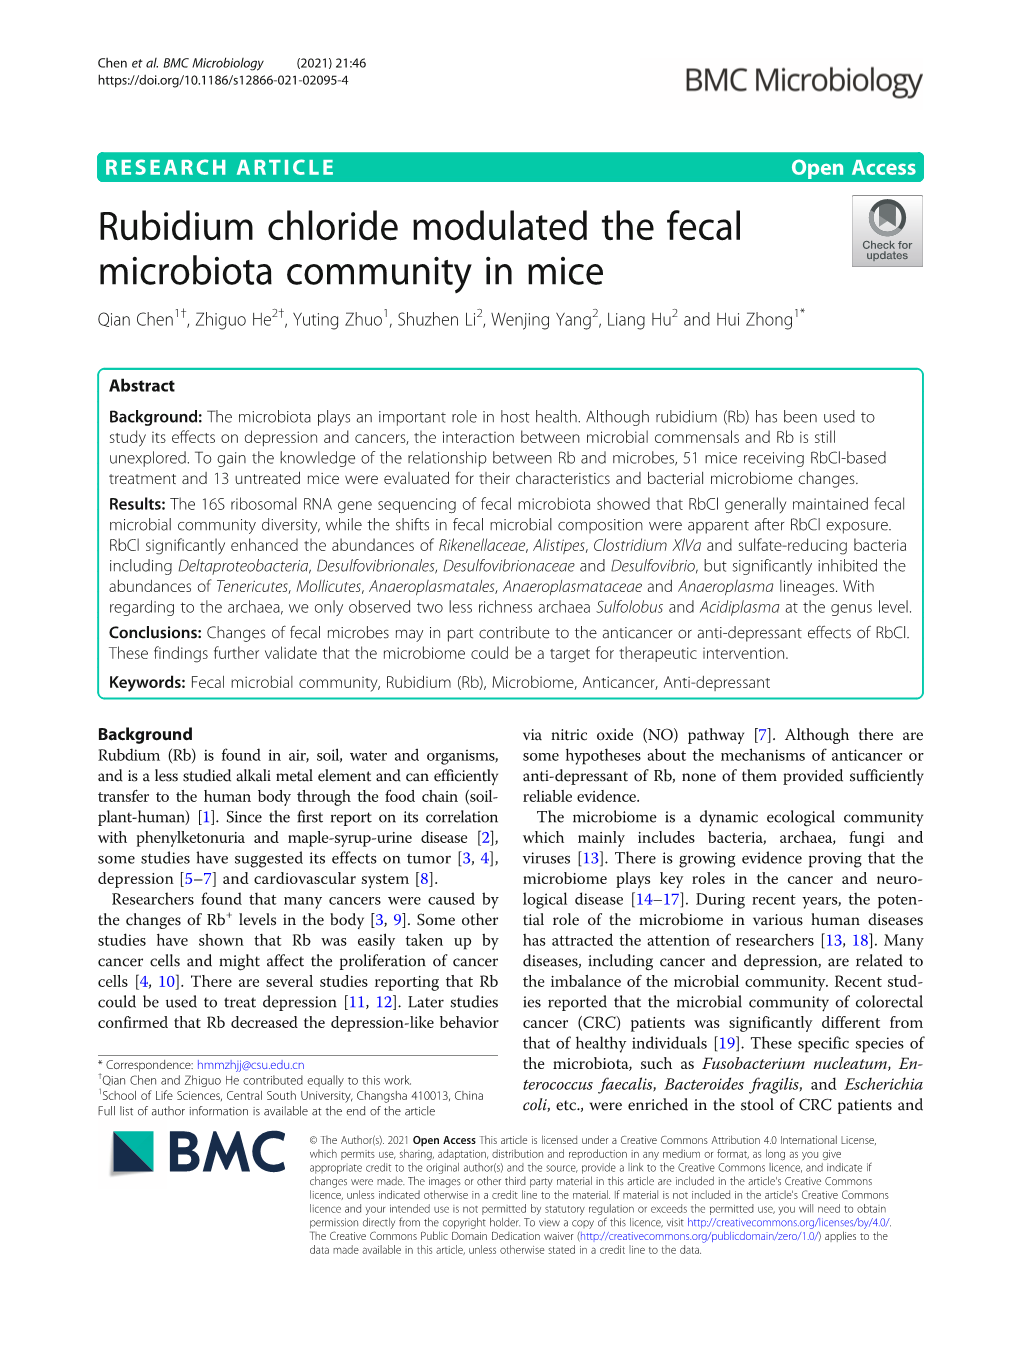 Rubidium Chloride Modulated the Fecal Microbiota Community in Mice Qian Chen1†, Zhiguo He2†, Yuting Zhuo1, Shuzhen Li2, Wenjing Yang2, Liang Hu2 and Hui Zhong1*